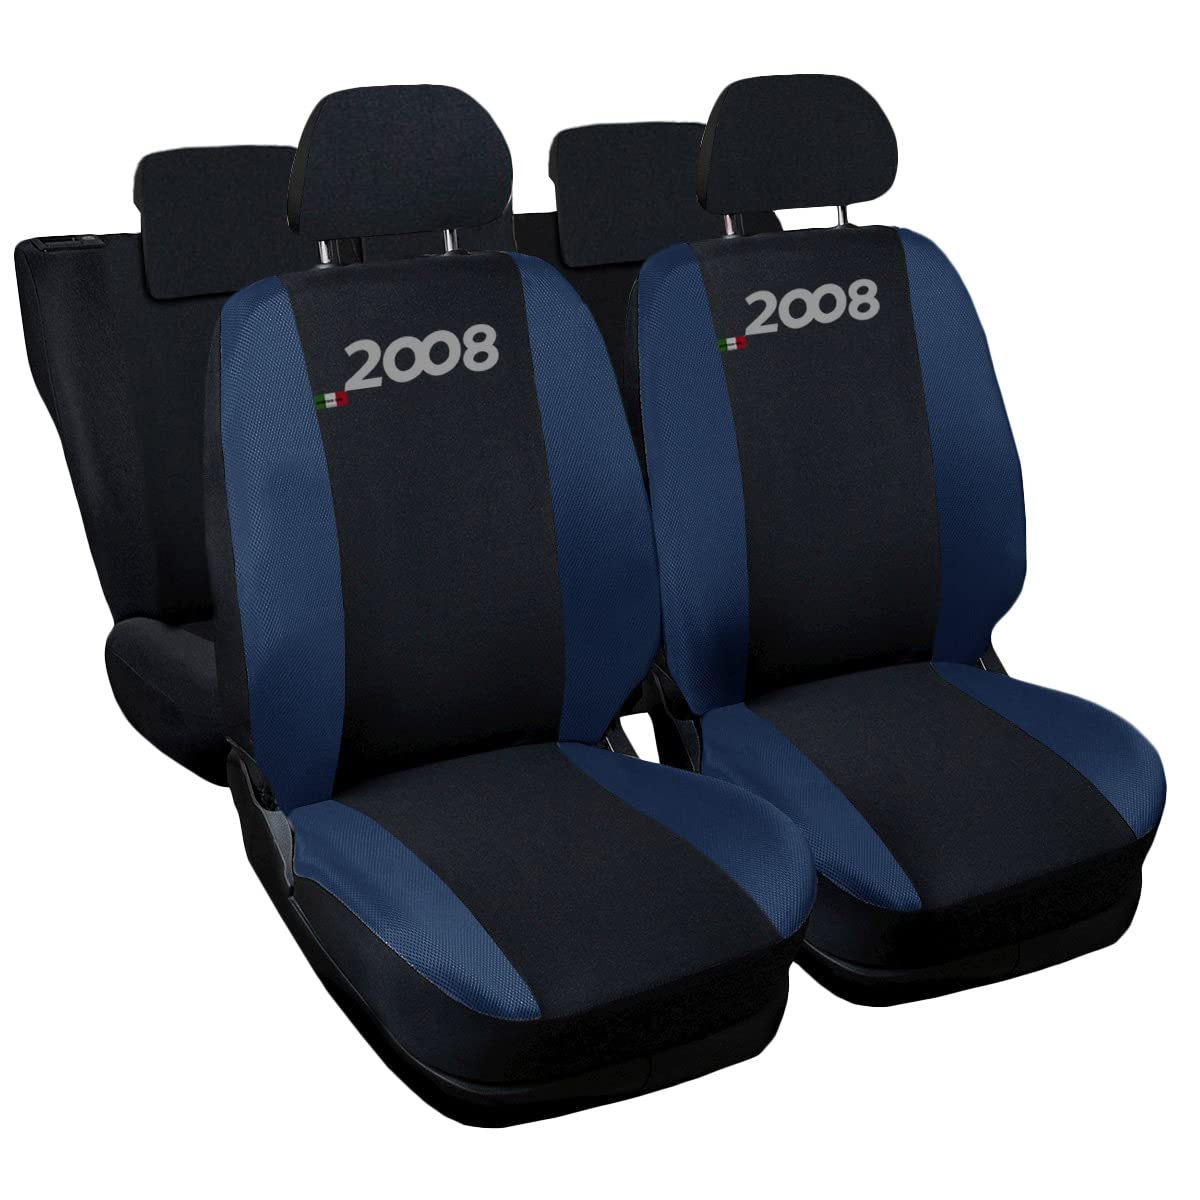 Auto Accessori Lupex - Sitzbezüge für Autositz, kompatibel Autositzbezüge für 2008, schwarz dunkelblau, Made in Italy, Set Sitzbezüge für Vorder- und Rücksitze, Polyester-Gewebe, Auto-Innenbezüge von Auto Accessori Lupex